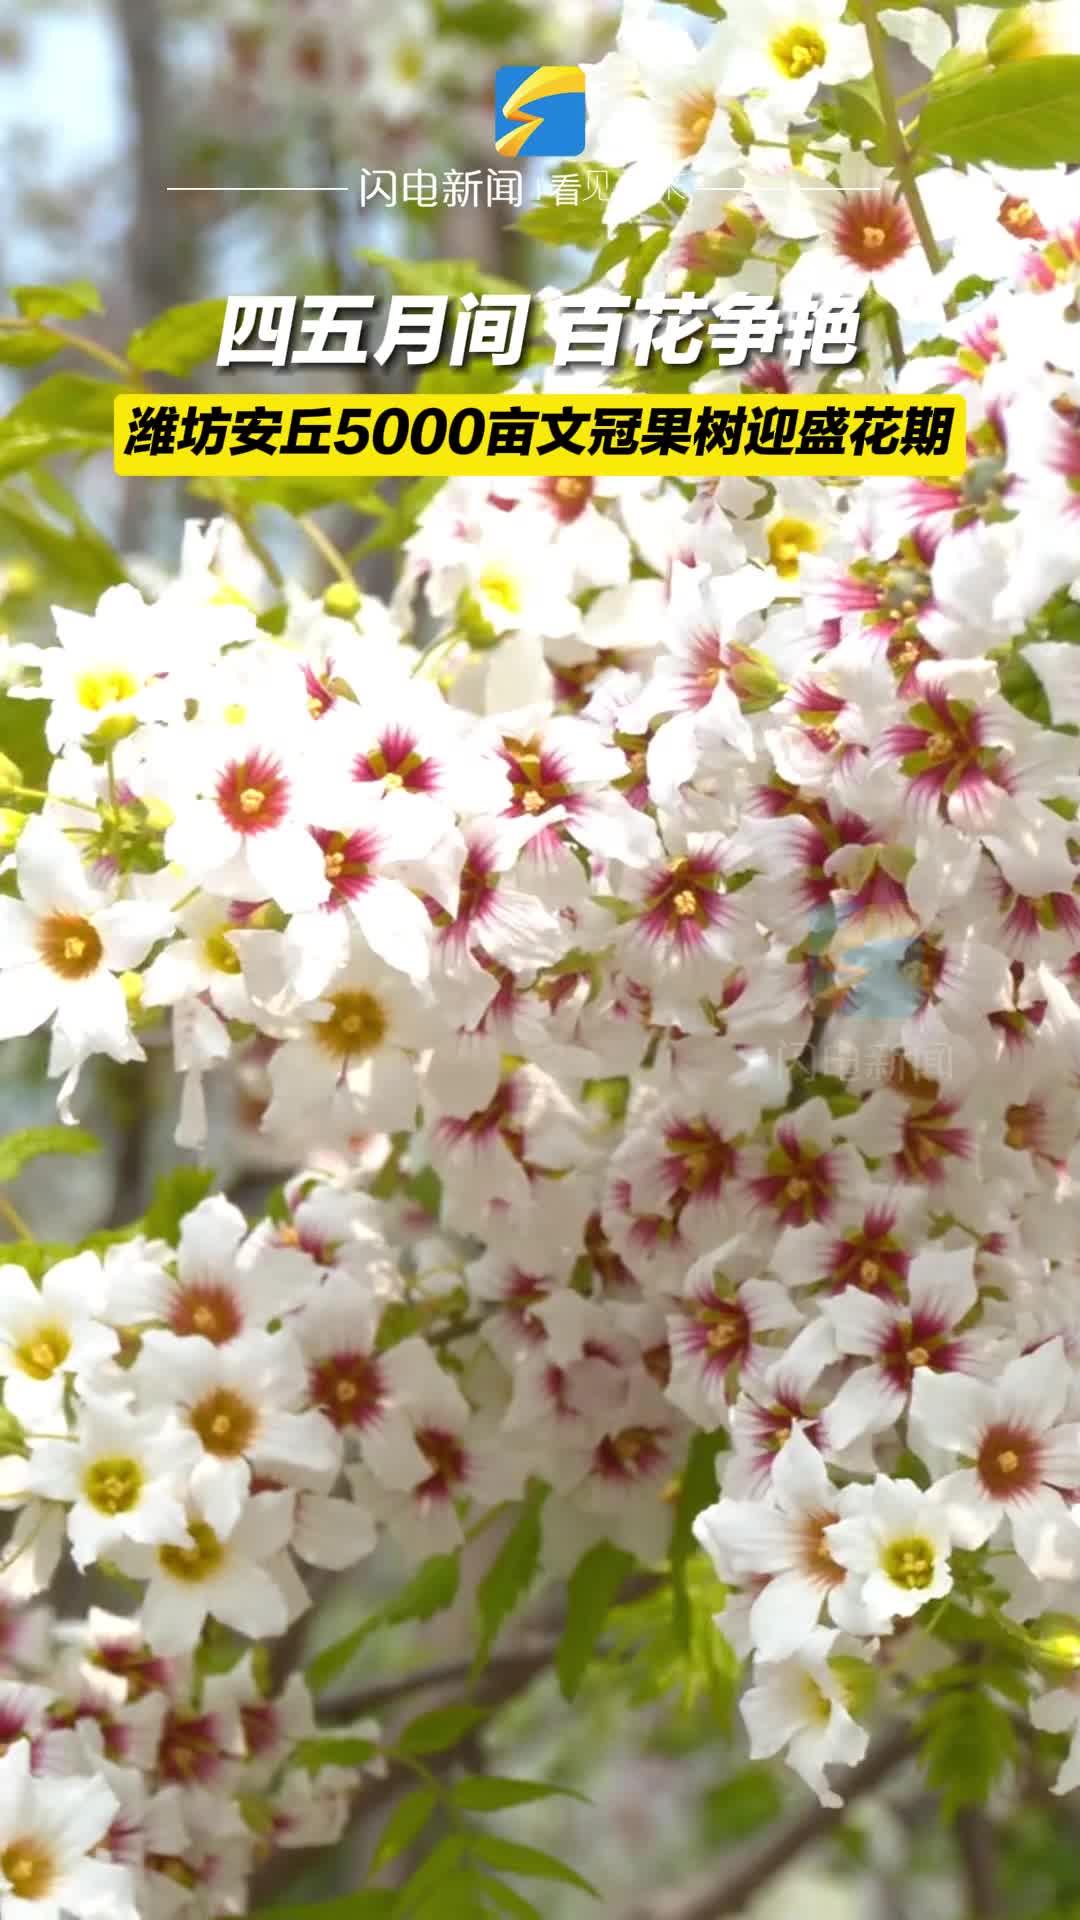 最美人间四月天 潍坊安丘5000亩文冠果树迎盛花期